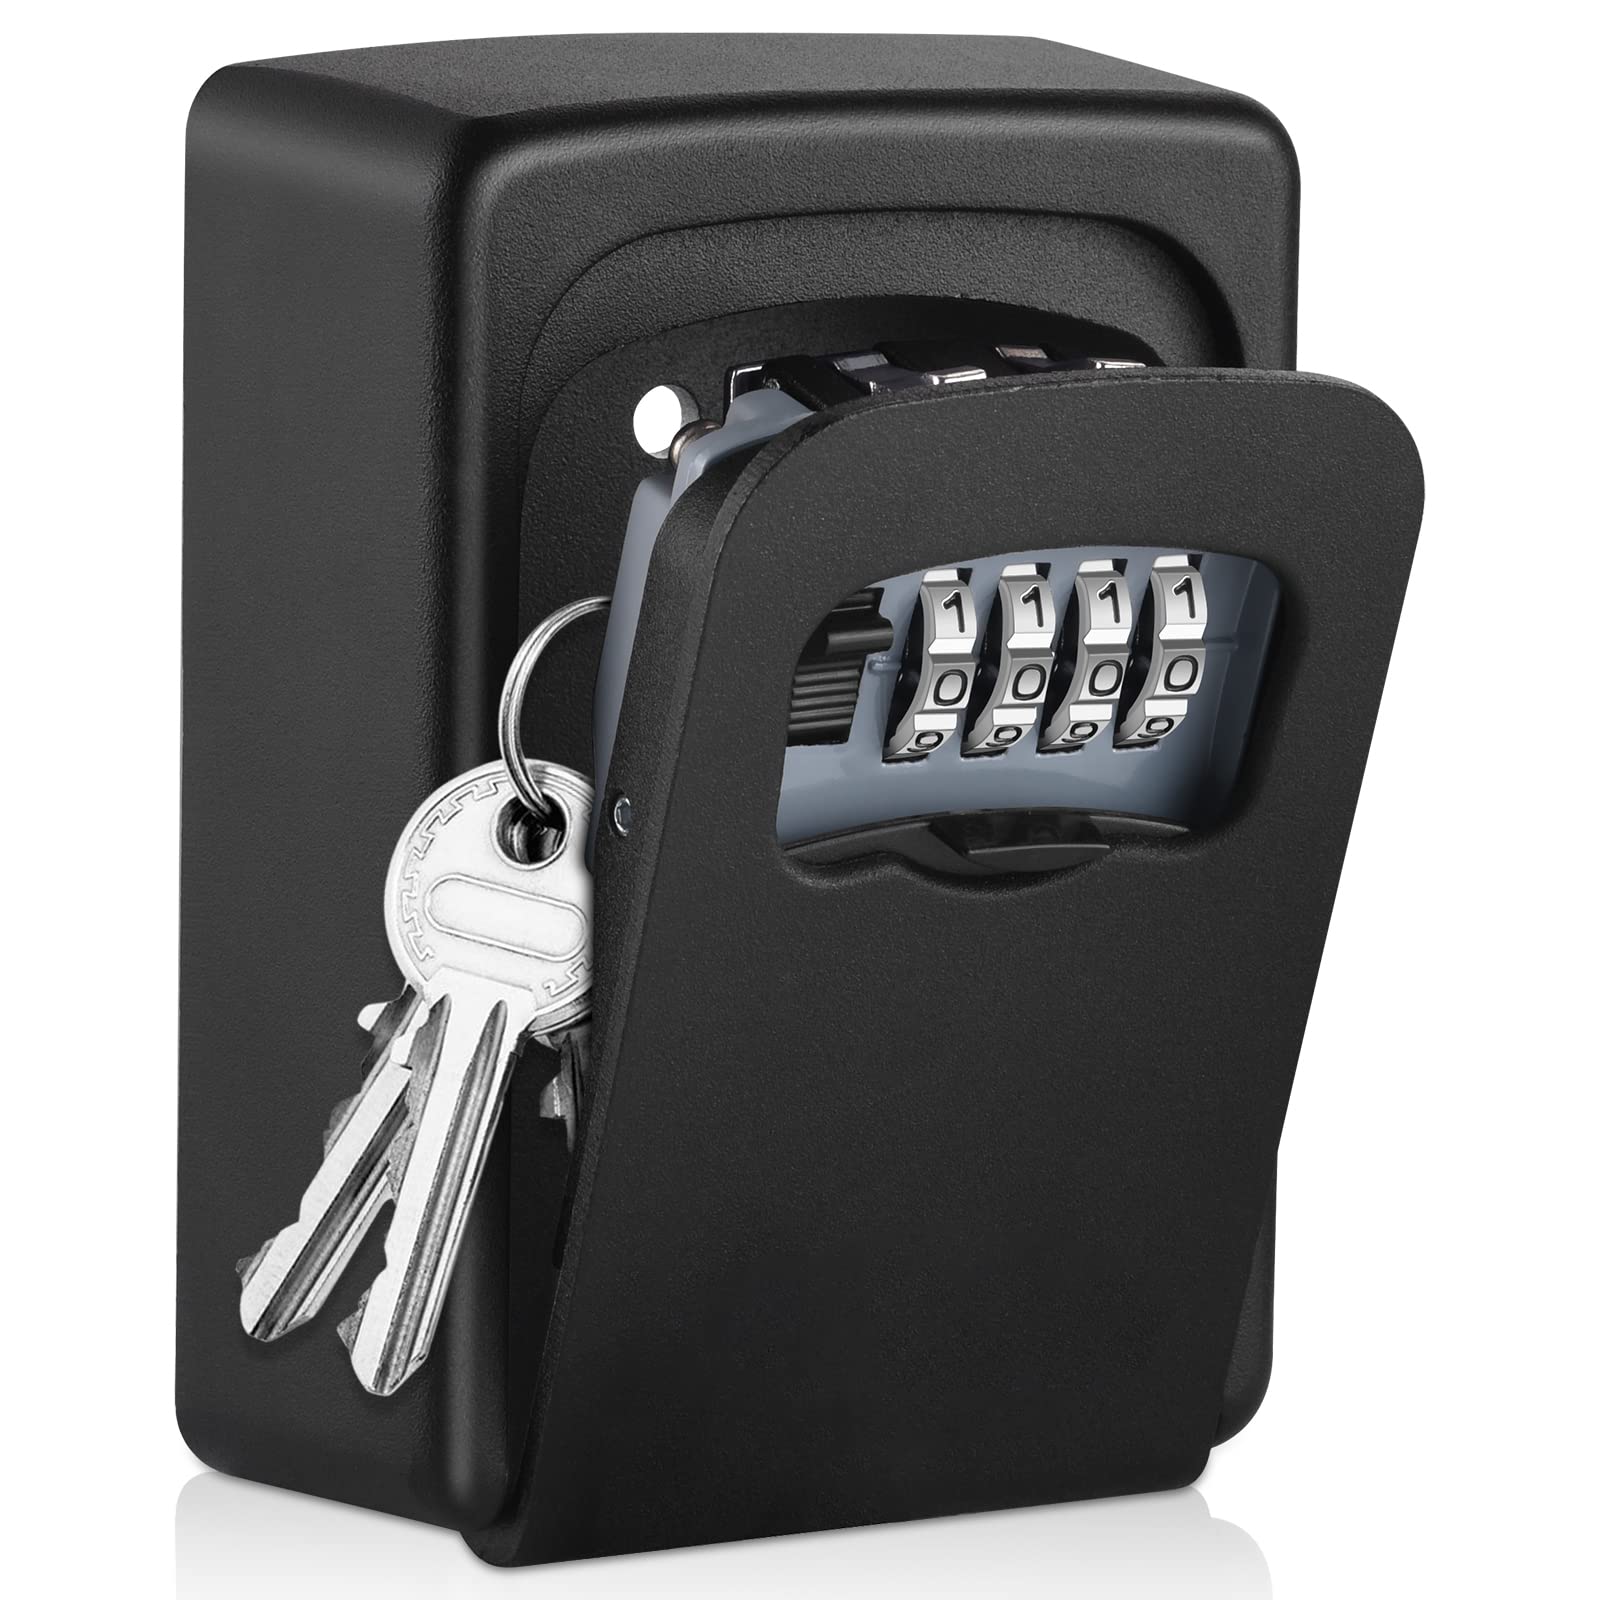 A sturdy safe or lockbox.